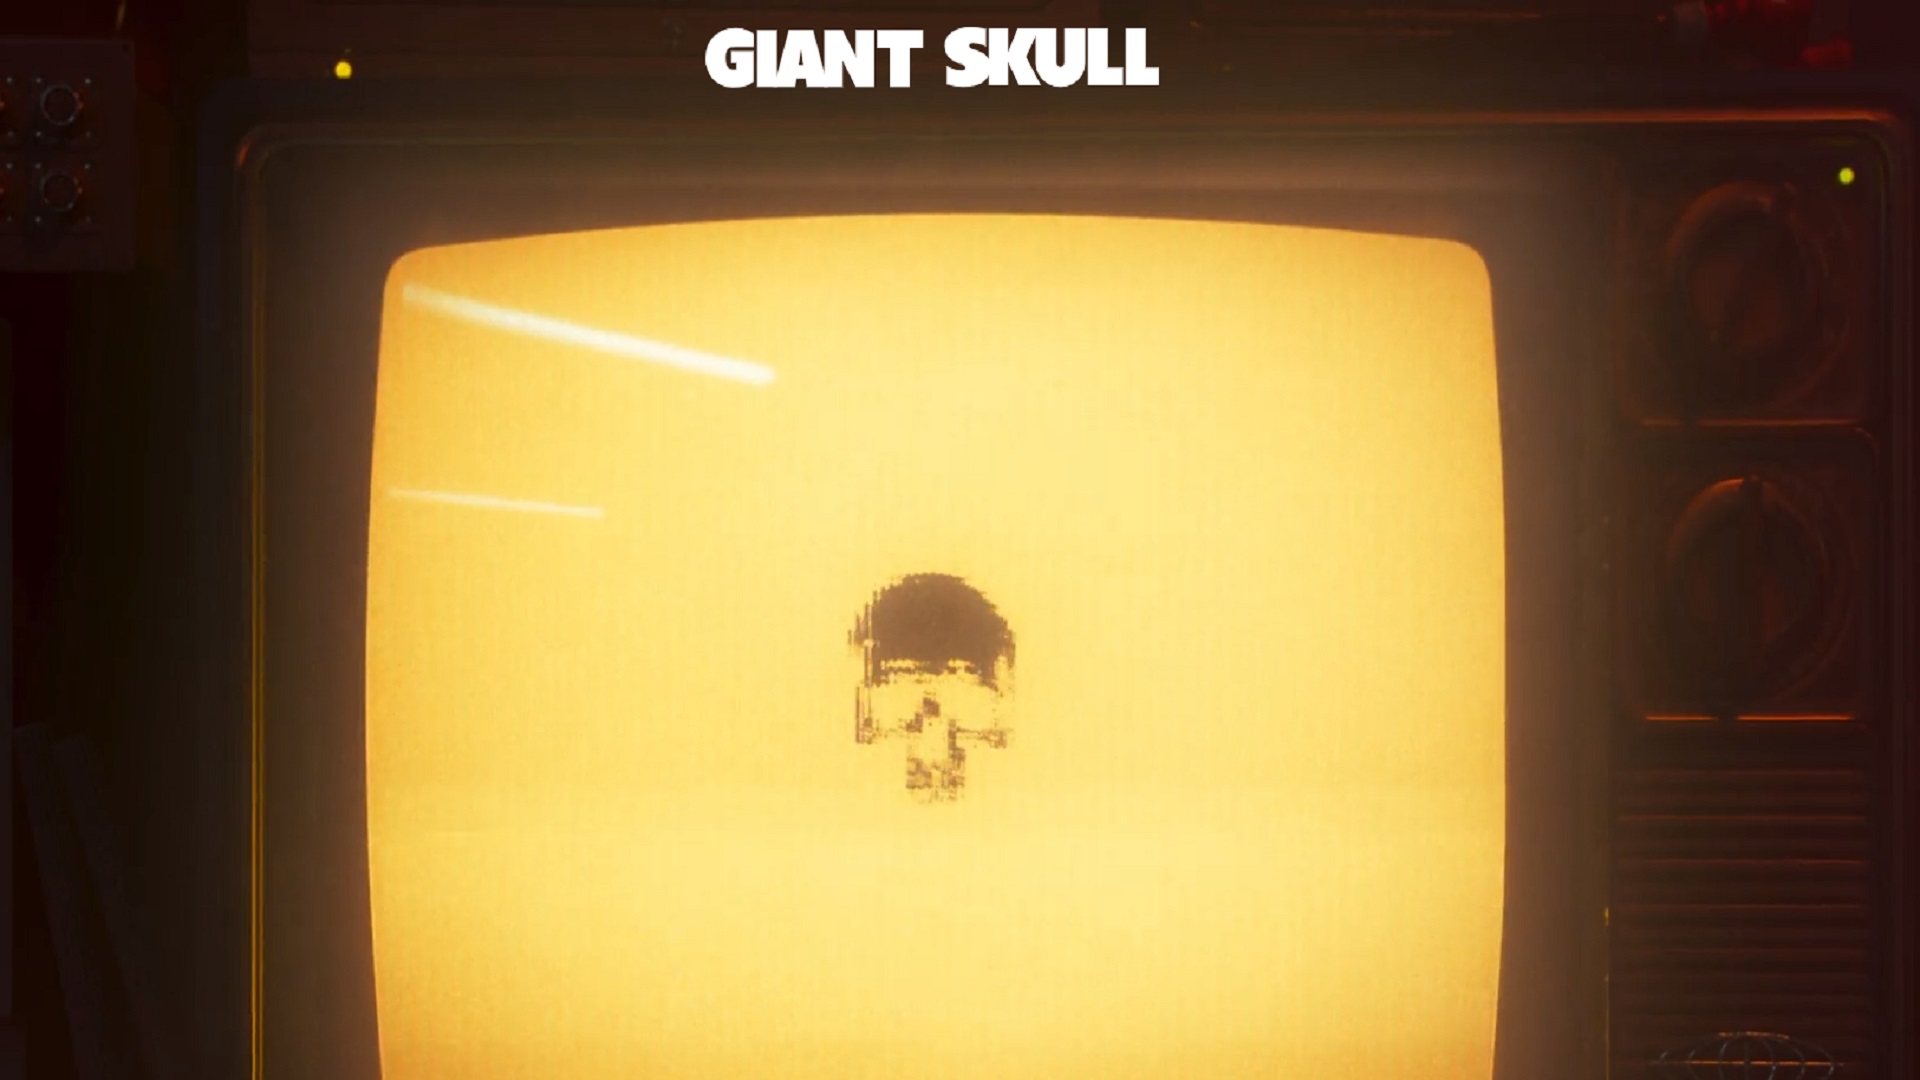 Giant Skulls webbplats